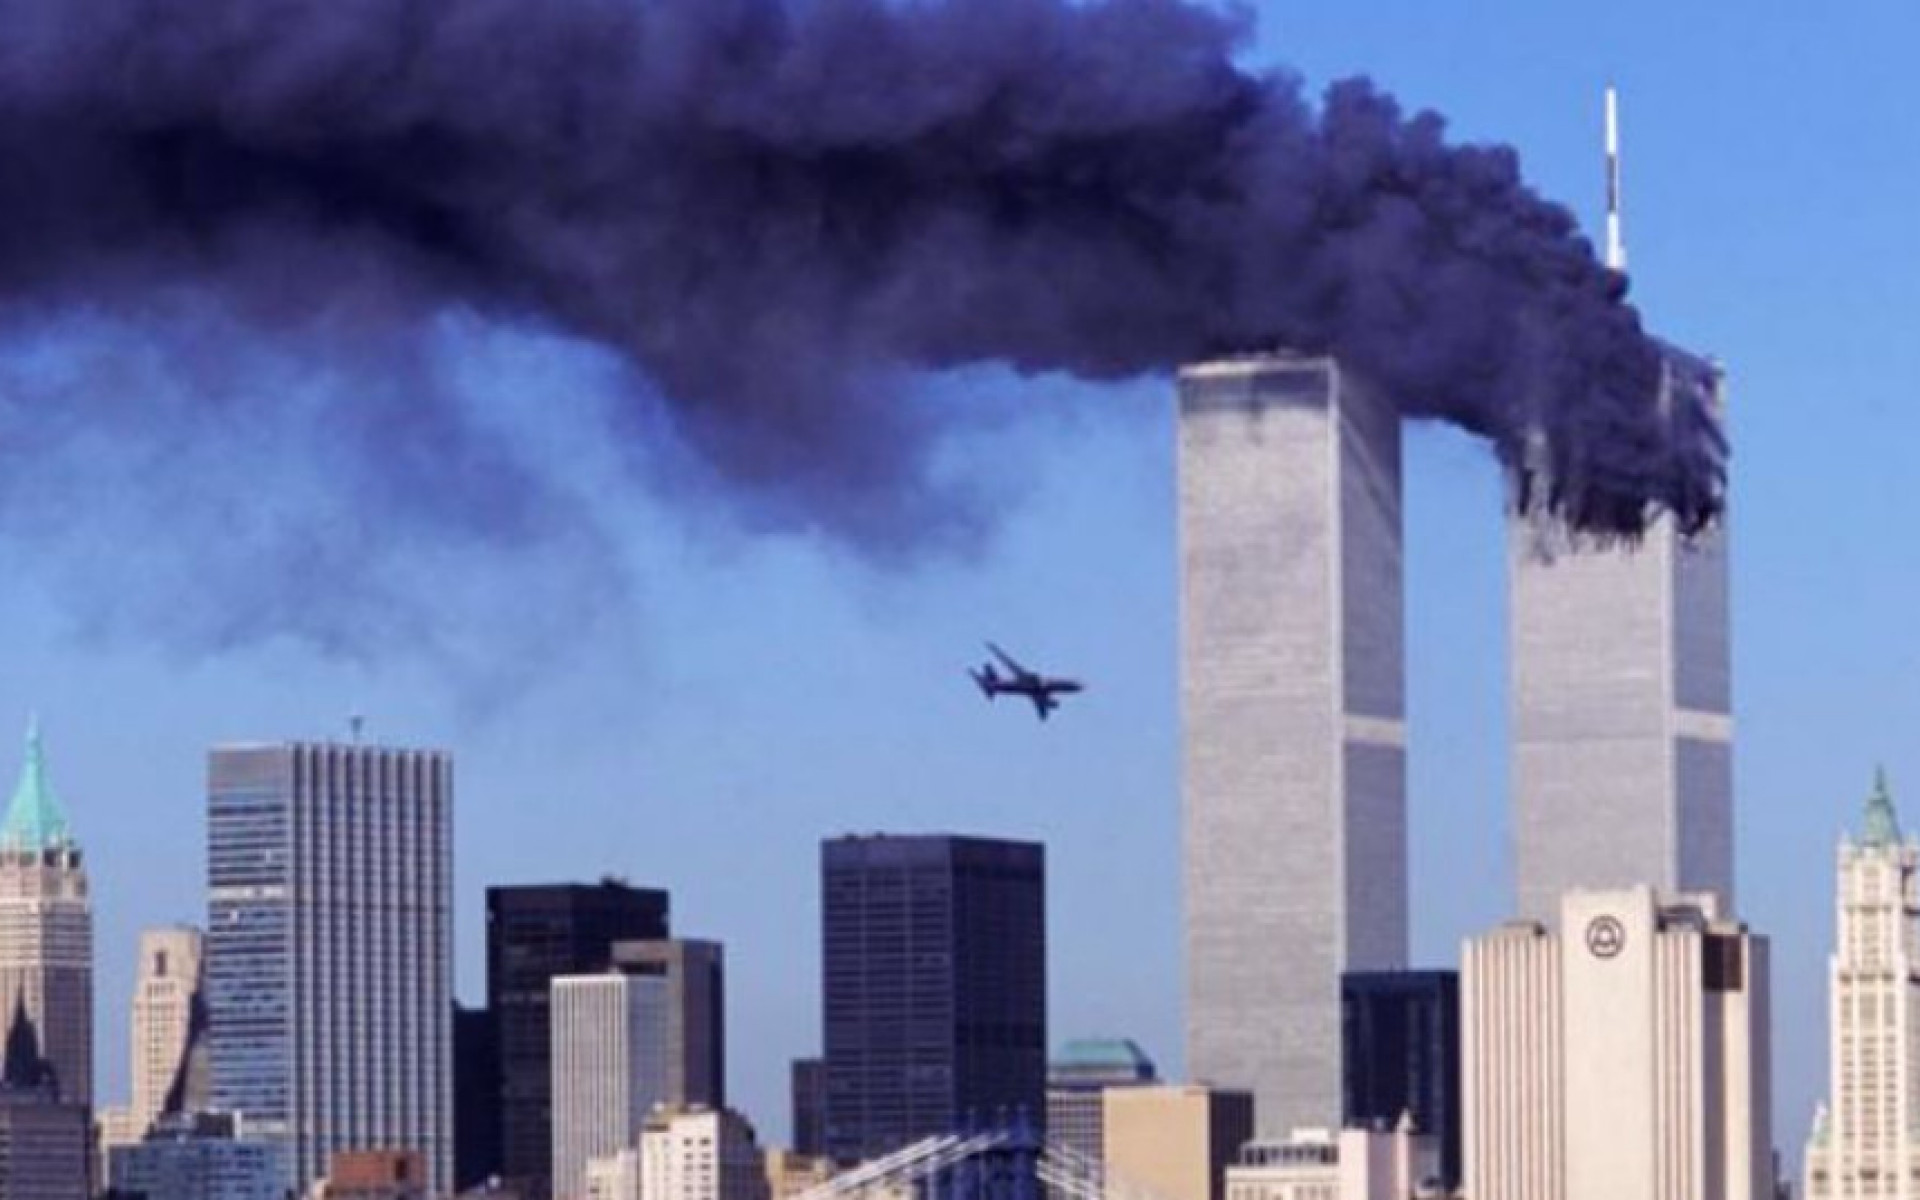 11η Σεπτεμβρίου 2001: Η ημέρα που οι ΗΠΑ ανακάλυψαν ότι είναι ευάλωτες